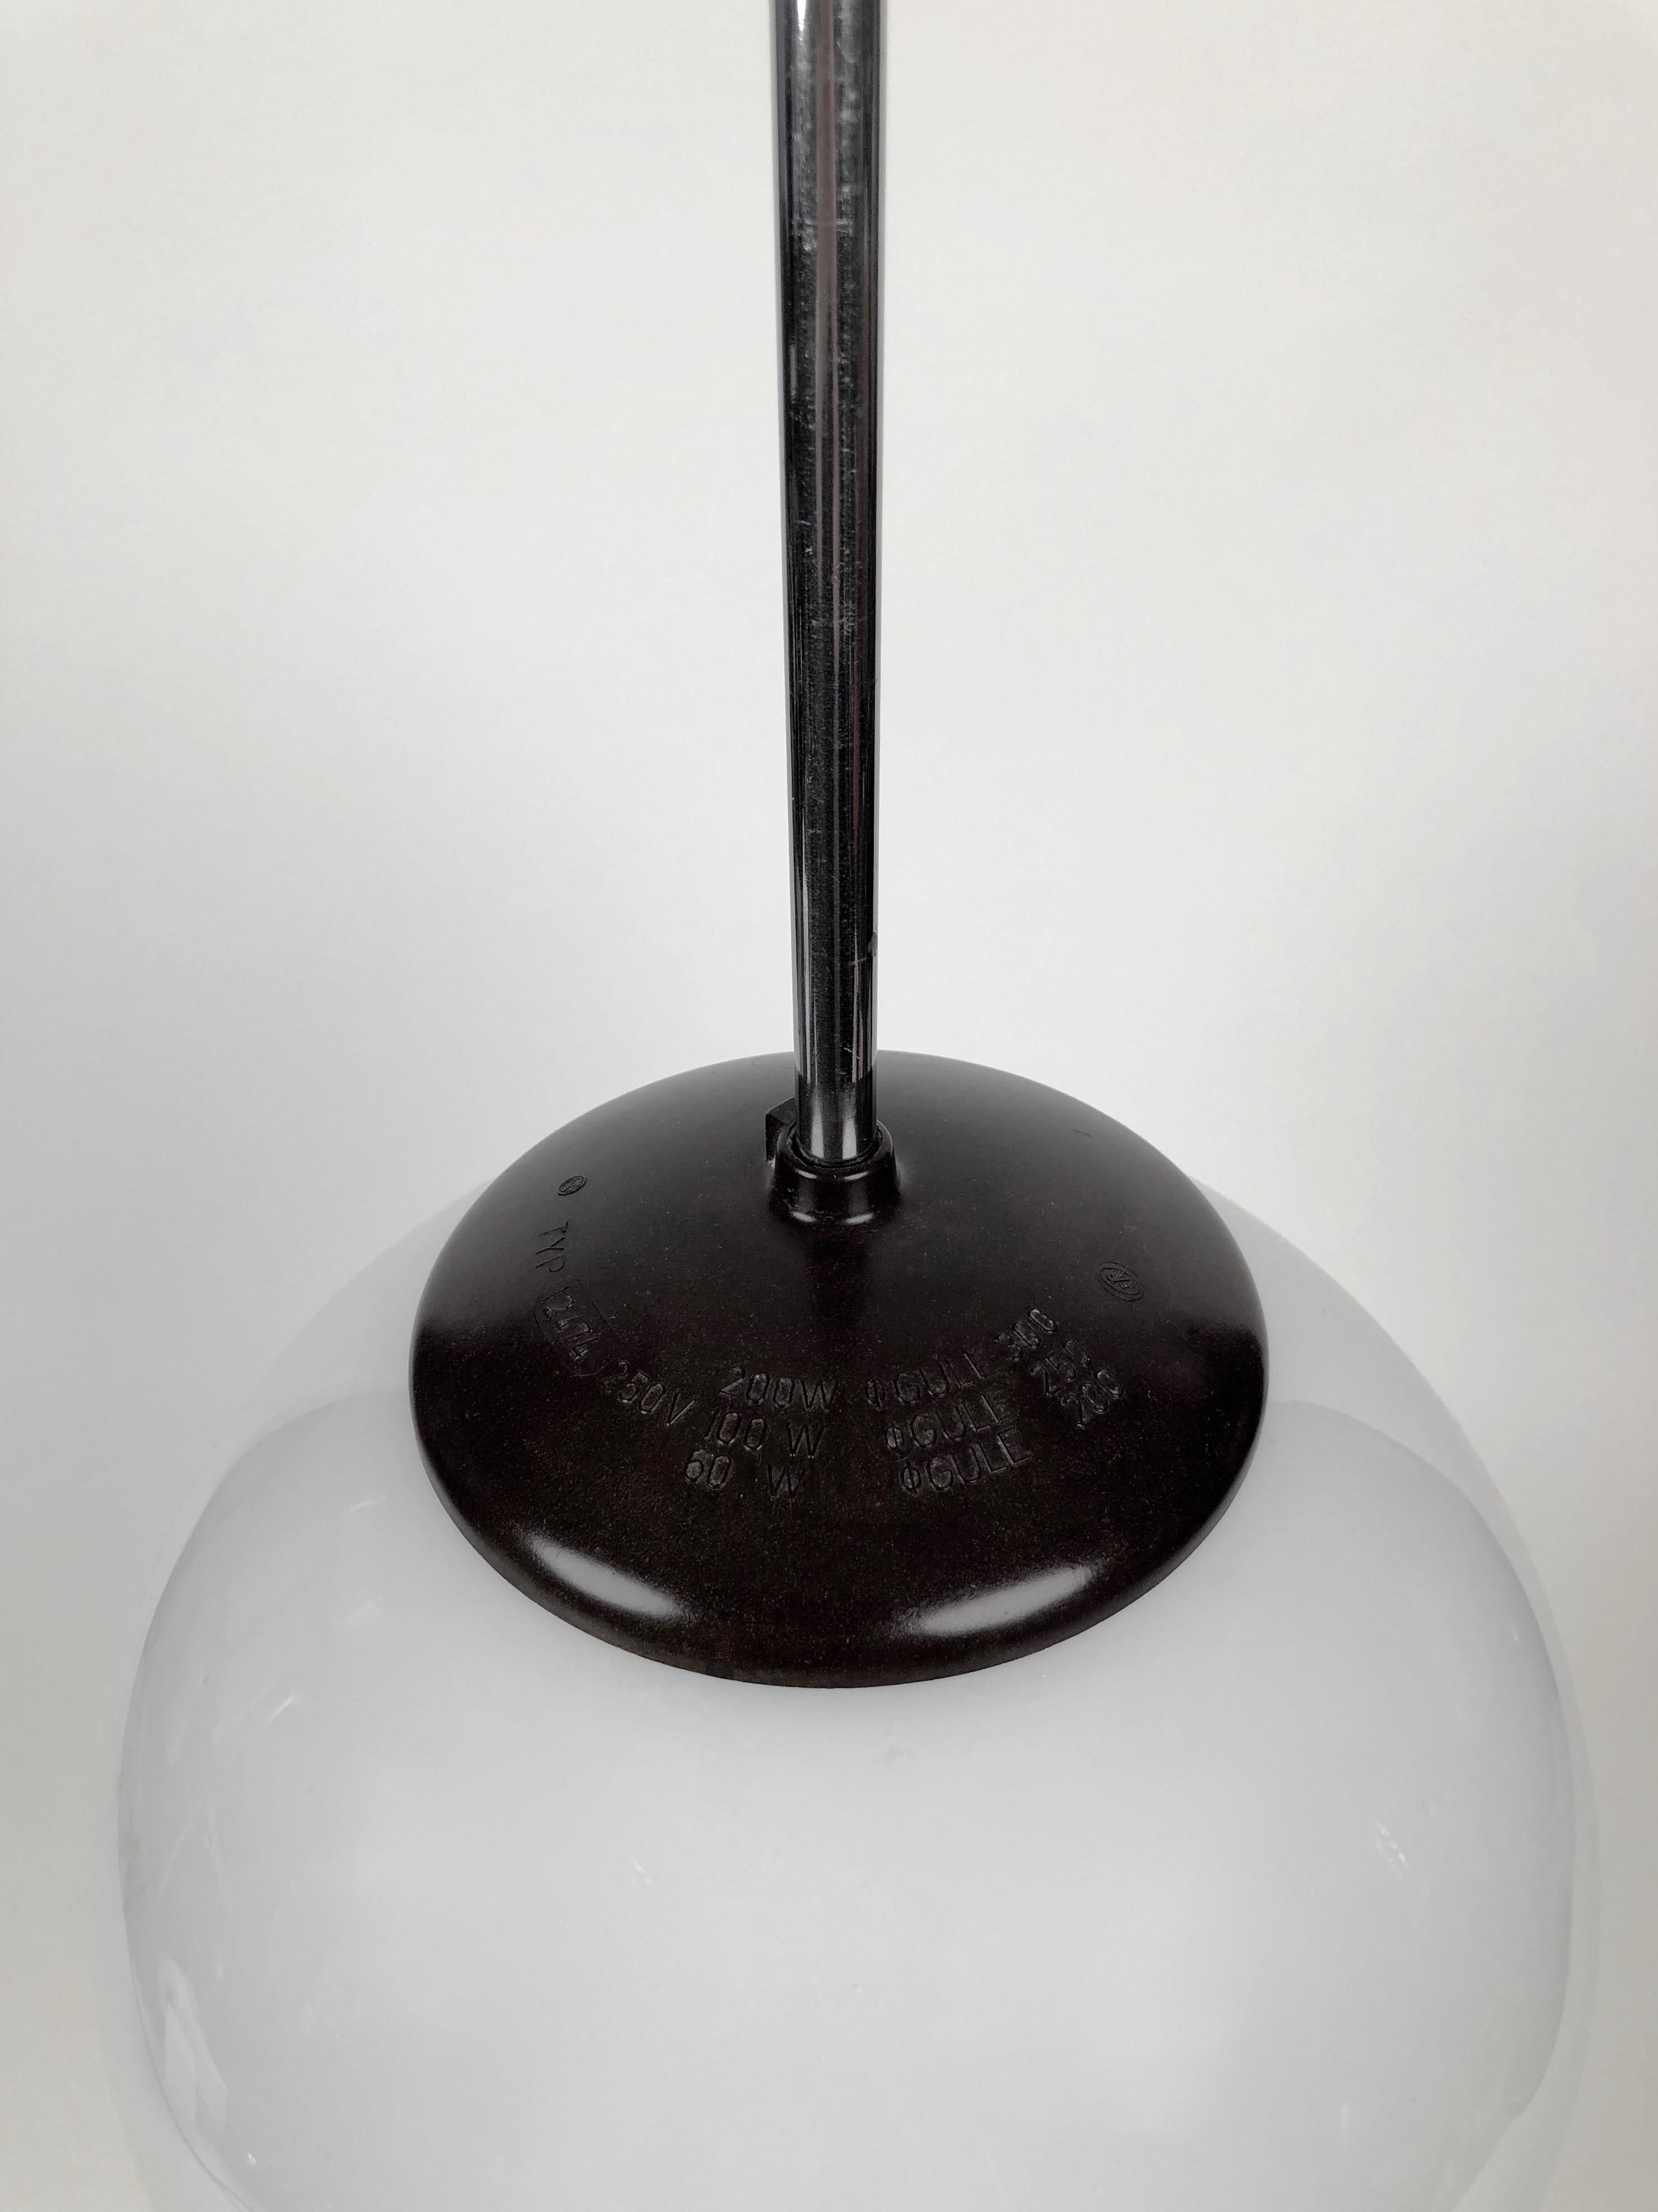 Klassische Hängeleuchte aus den 1930er Jahren mit runder Opalglas-Kugel. Das Design ist vom Bauhaus beeinflusst. Das Bakelit ist in sehr gutem Zustand.